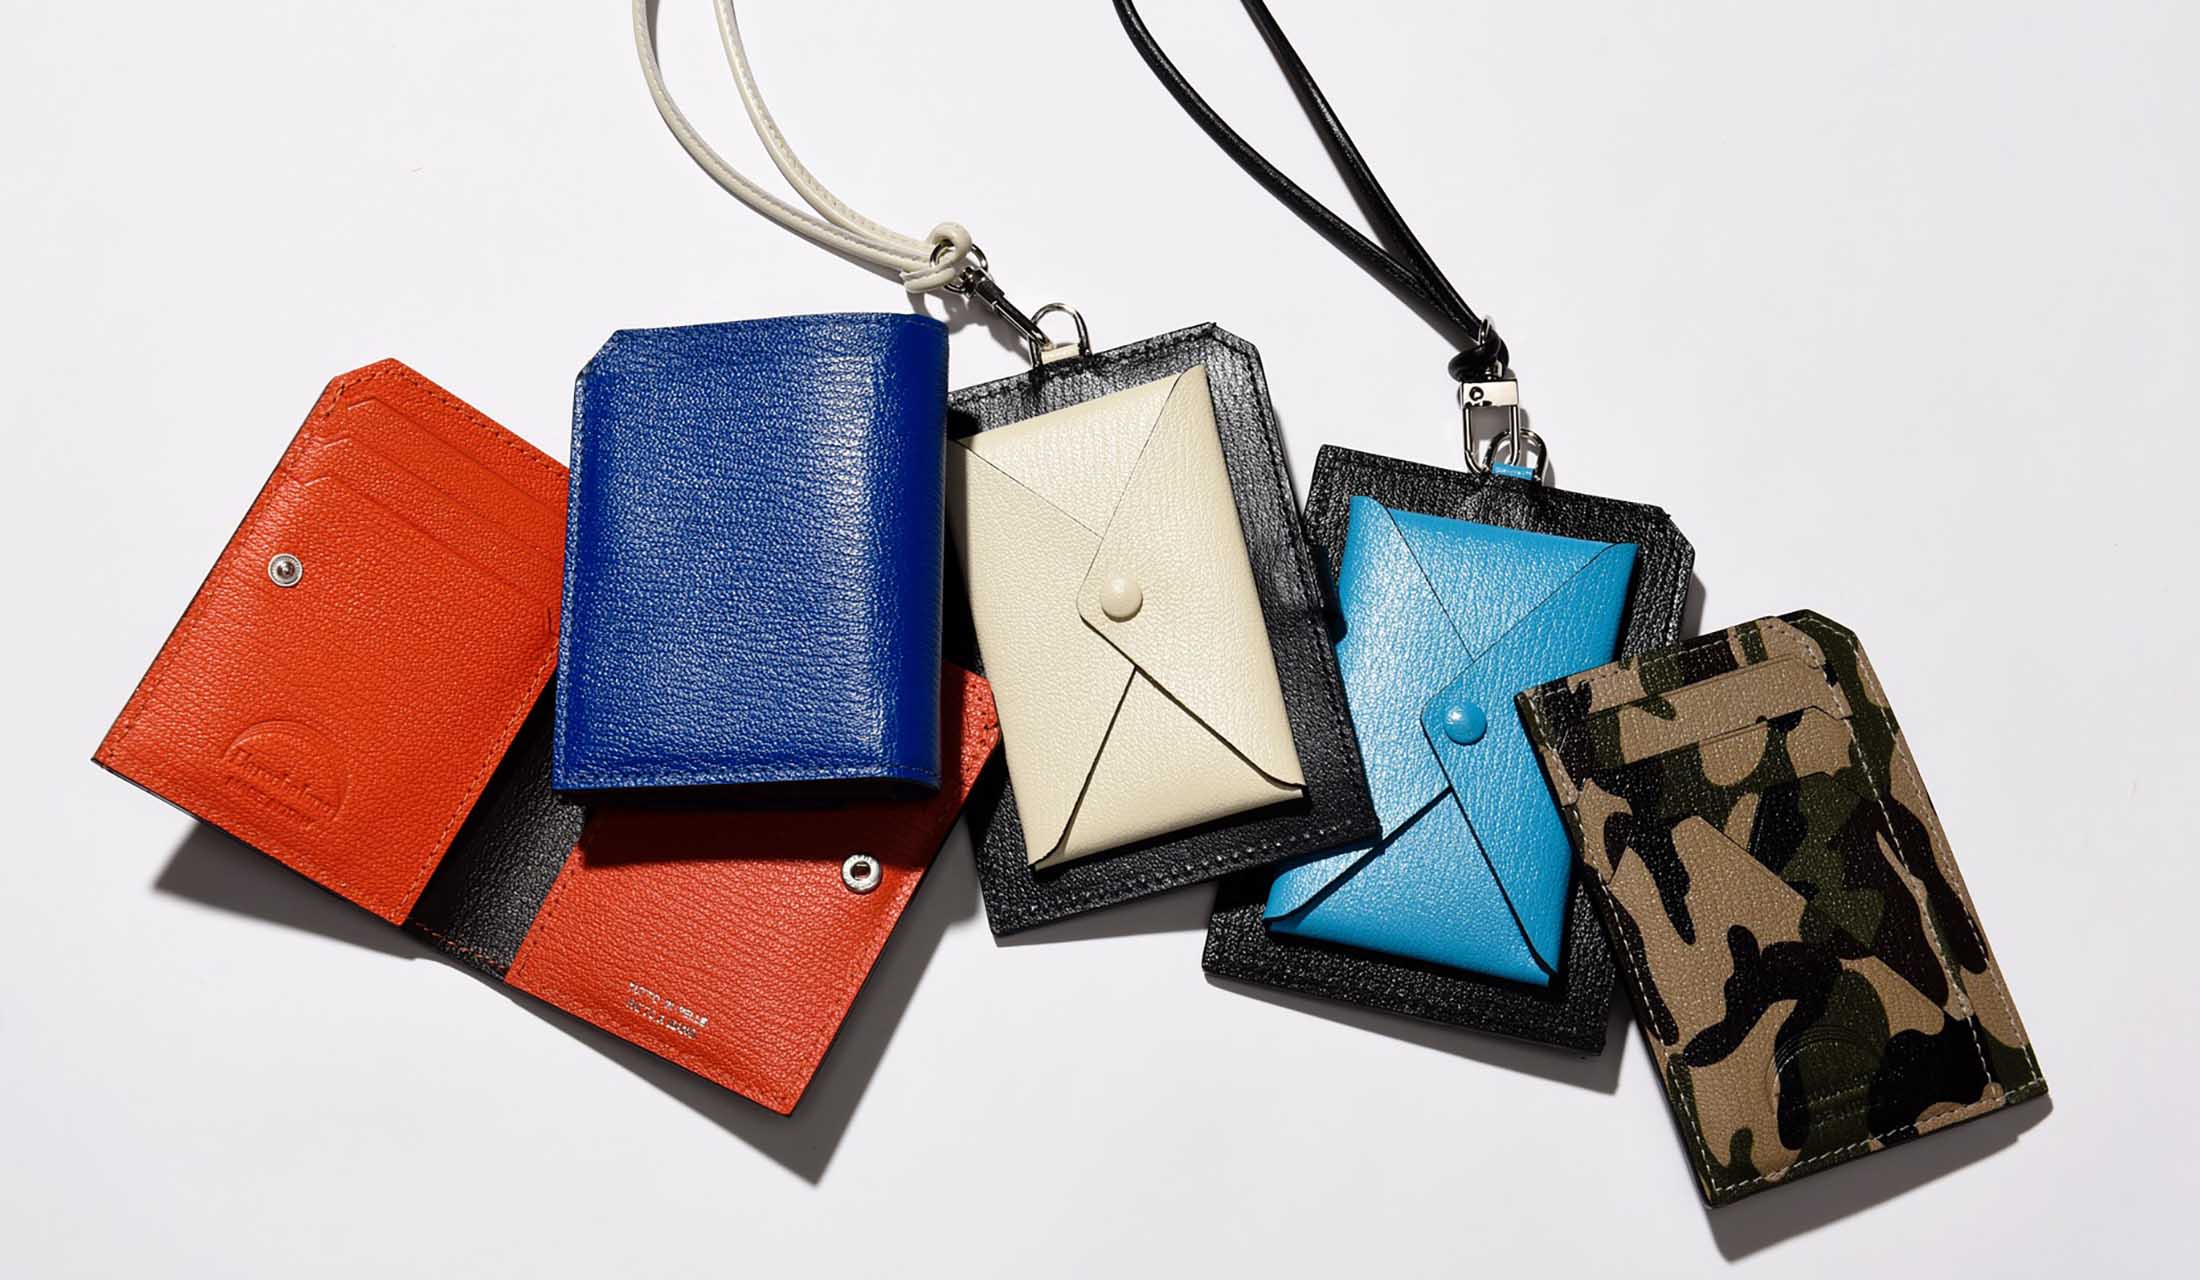 「ラルコバレーノ」のコンパクトな財布たち